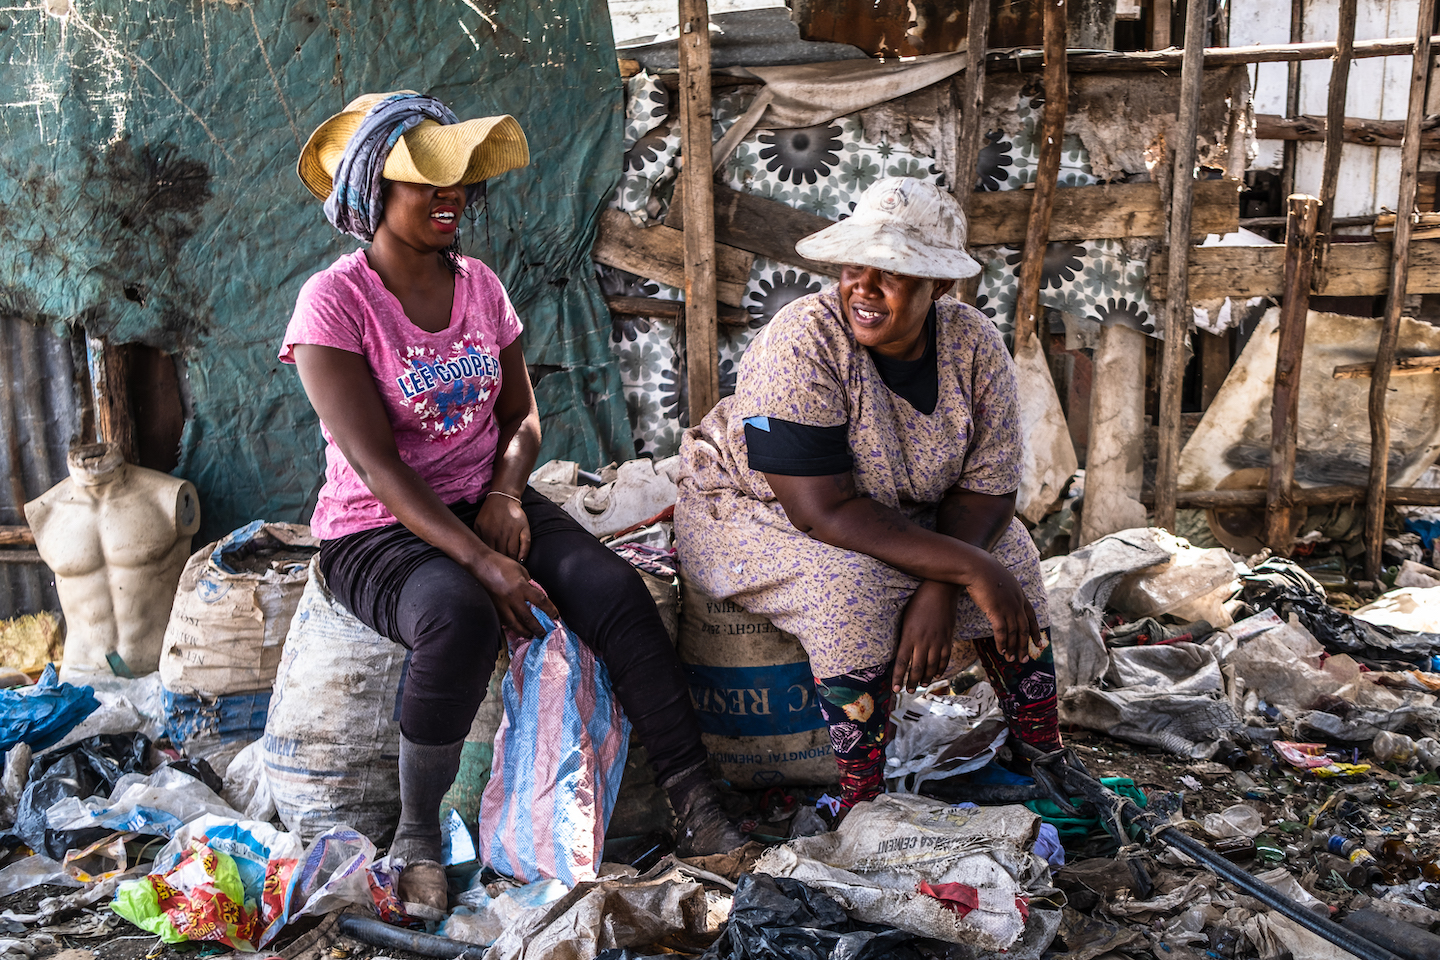 Tổ chức công đoàn tại Dandora do Wanjira (phải) sáng lập, ra đời cùng lúc với một hiệp ước toàn cầu vừa được thảo luận 2 tháng trước đây bởi nhiều nhà lãnh đạo quốc tế tại Nairobi, nhằm mục đích ngăn chặn sự ô nhiễm rác thải nhựa.